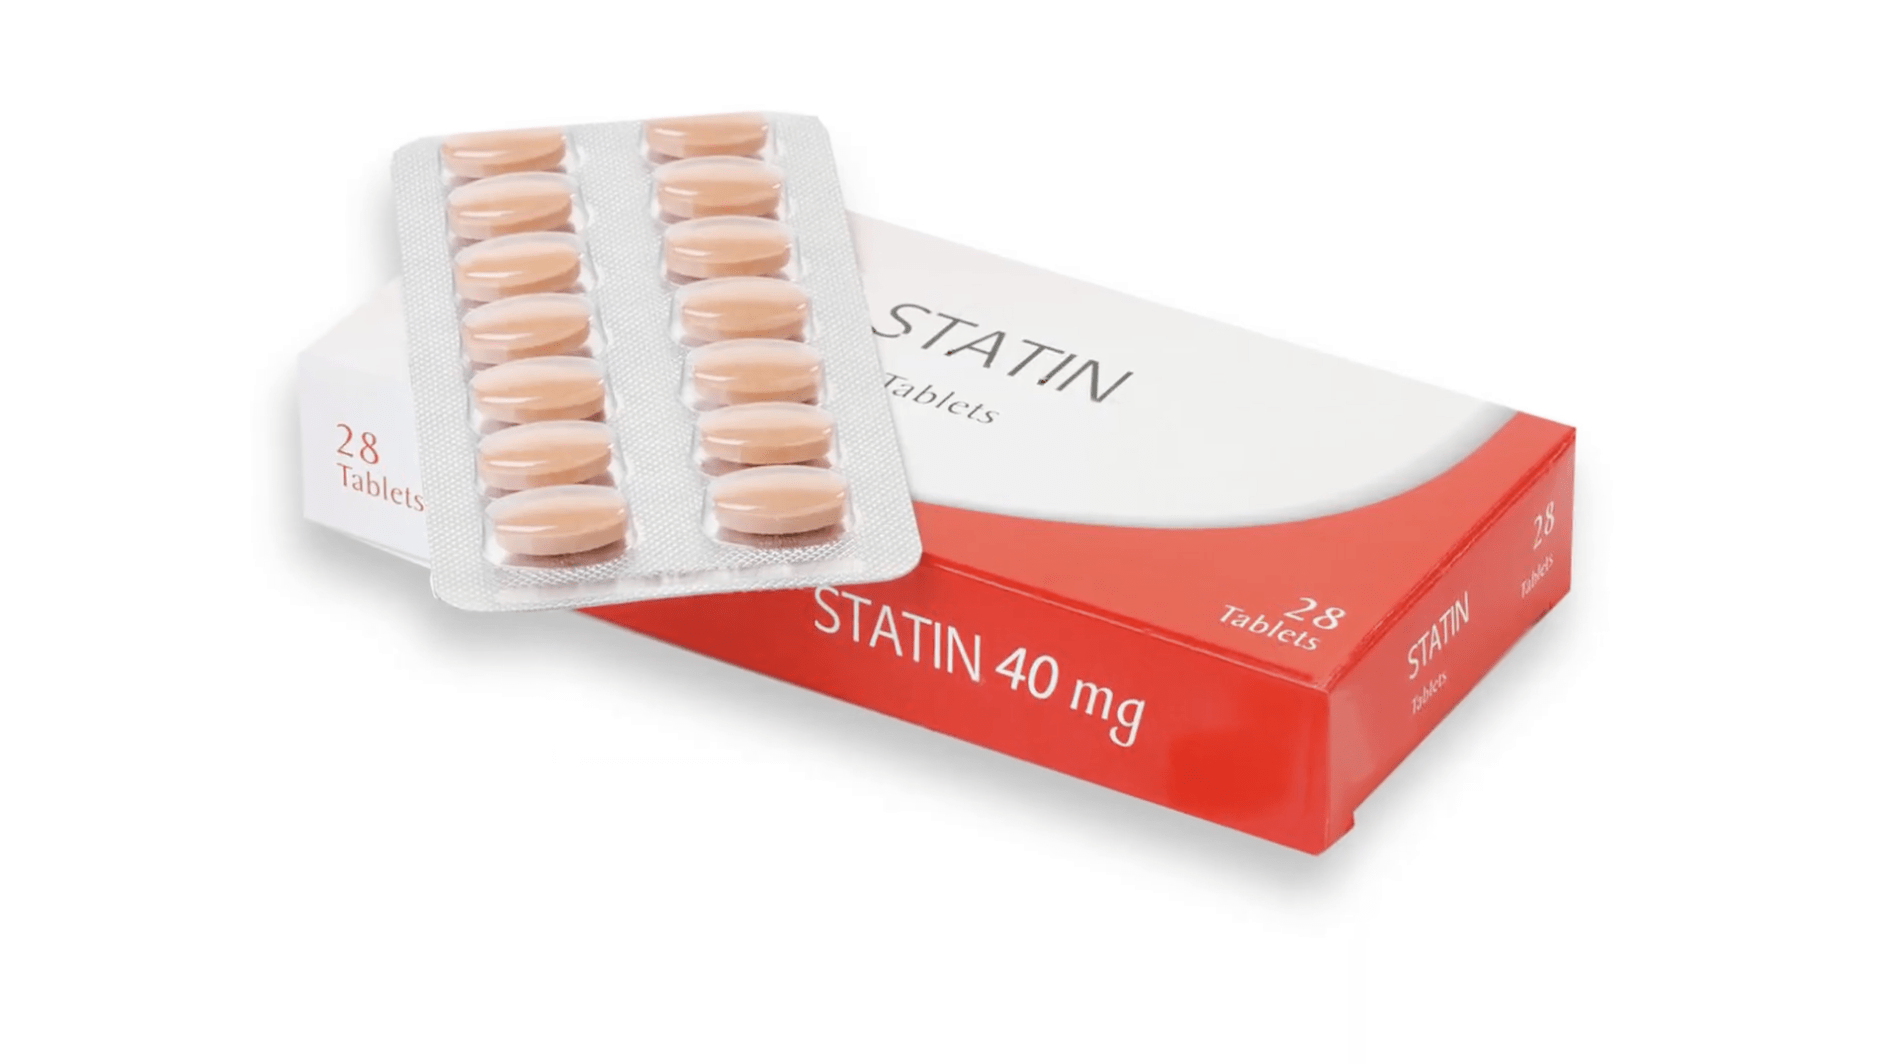 Statin drug packaging